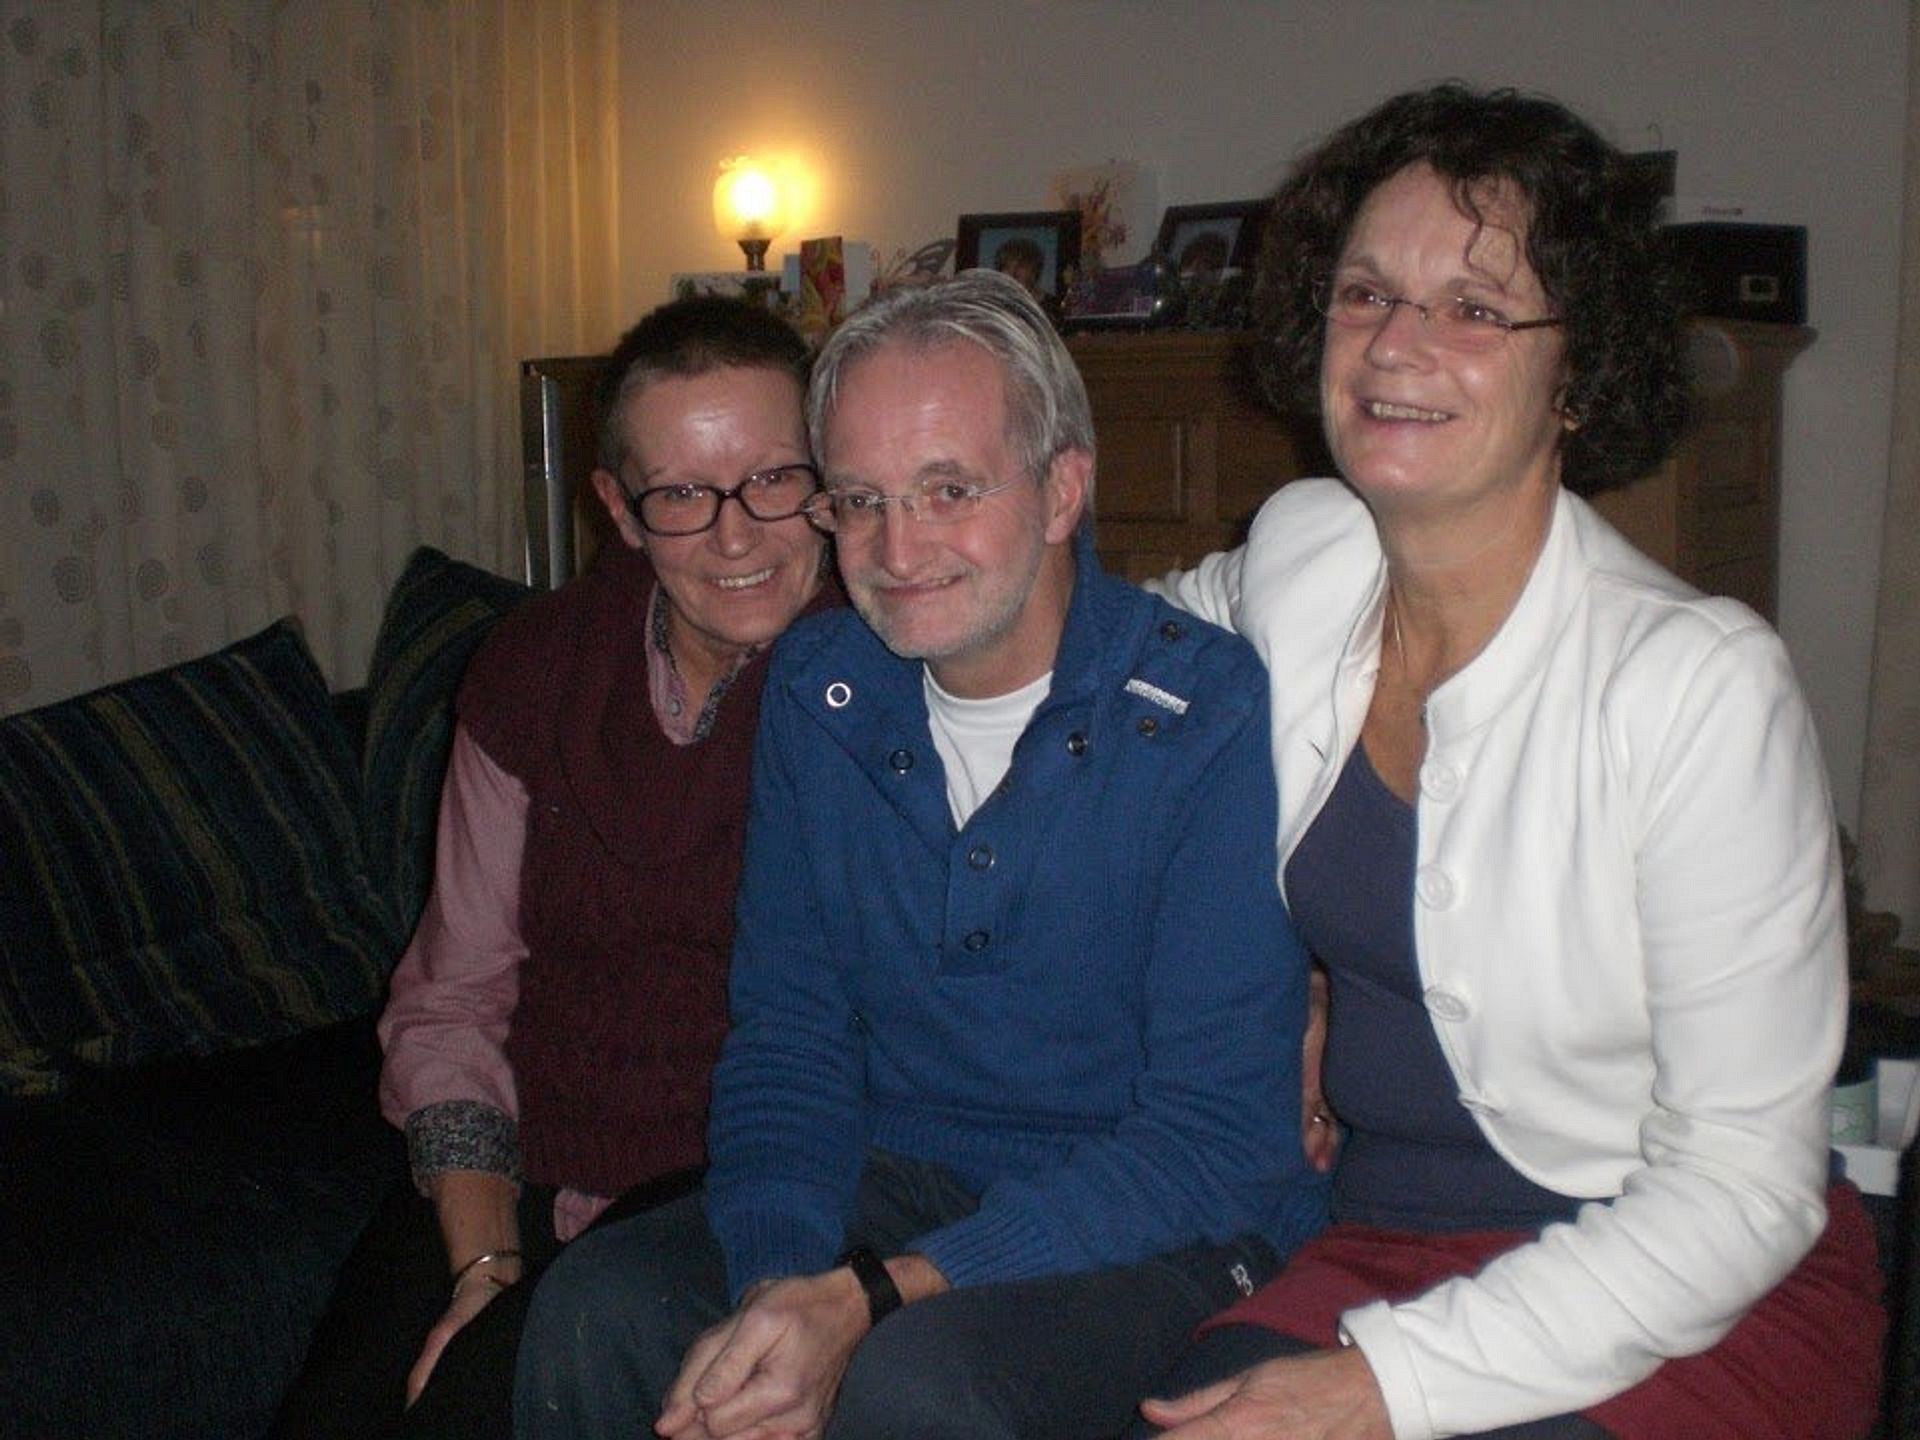 Kerst 2012: Christel (rechts) met haar man Wim en schoonzus Ankie (links), een maand voordat Wim overlijdt.